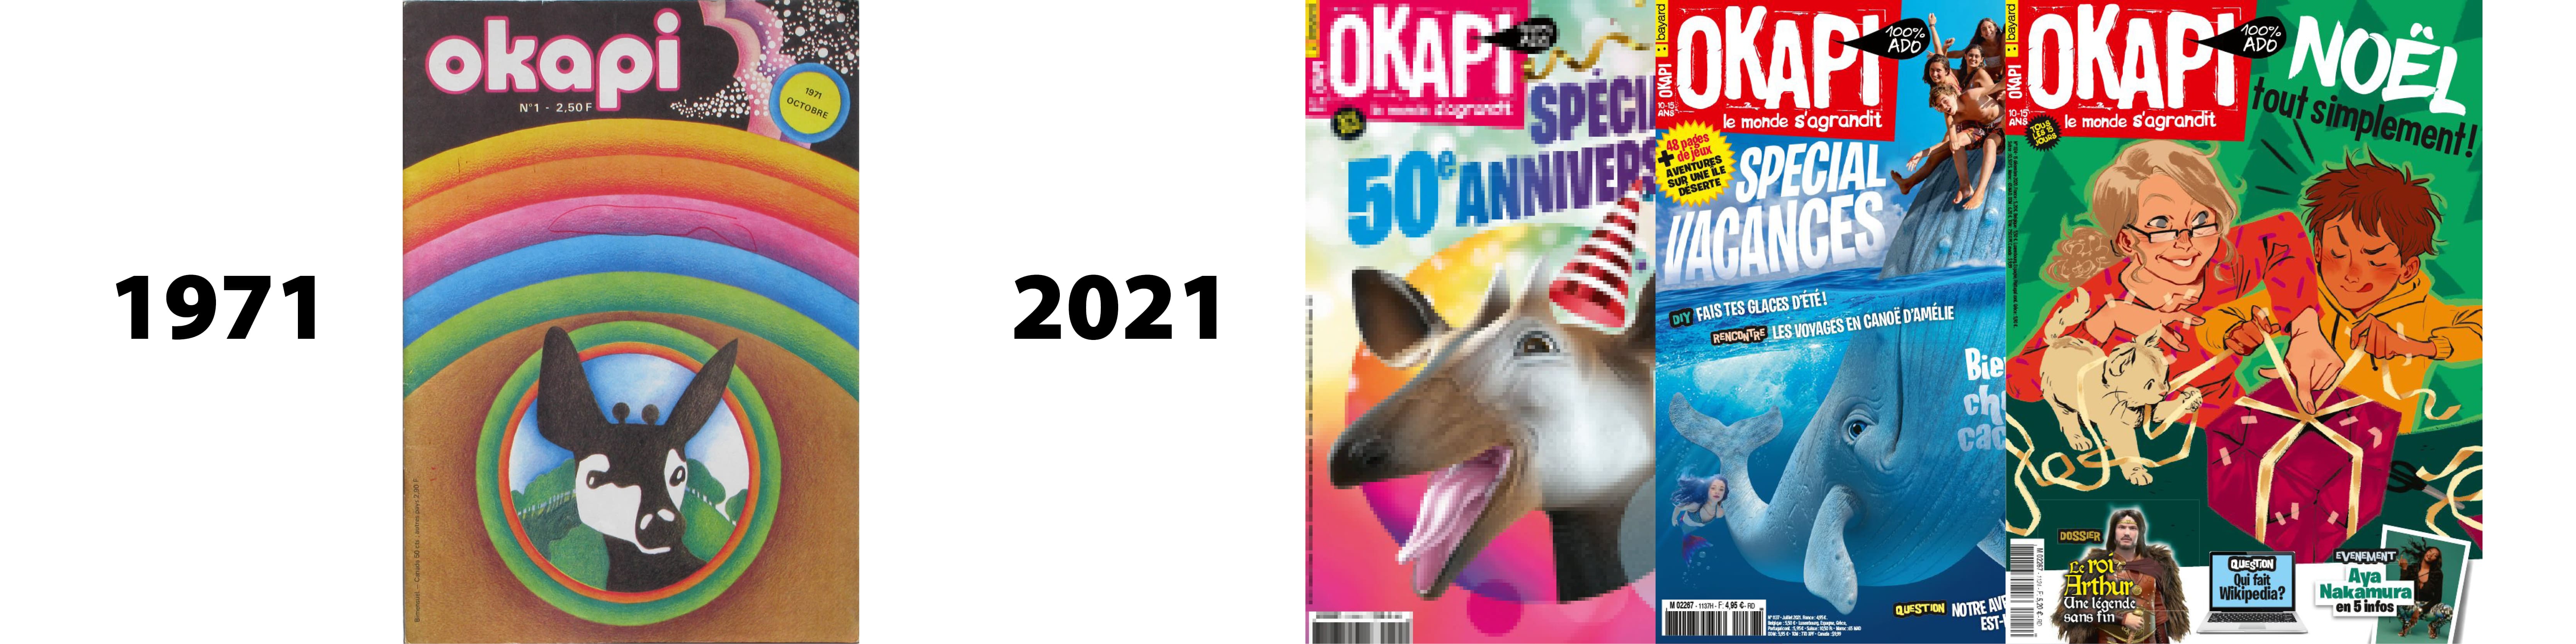 Le magazine Okapi fête ses 50 bougies